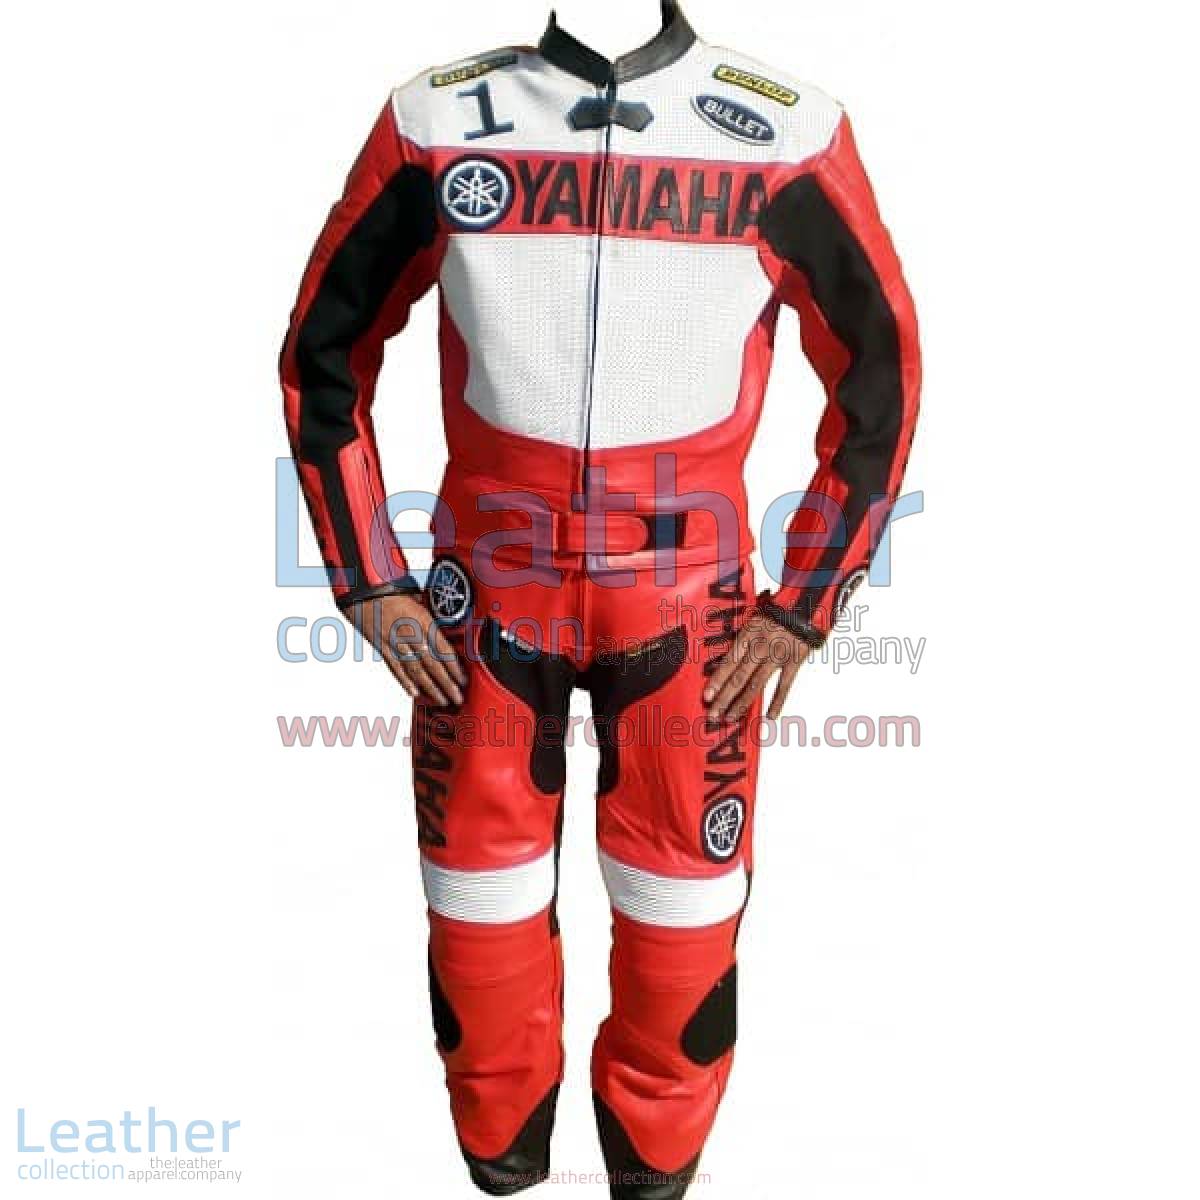 Yamaha Motorbike Leather Suit Red / White | yamaha apparel,yamaha leather suit